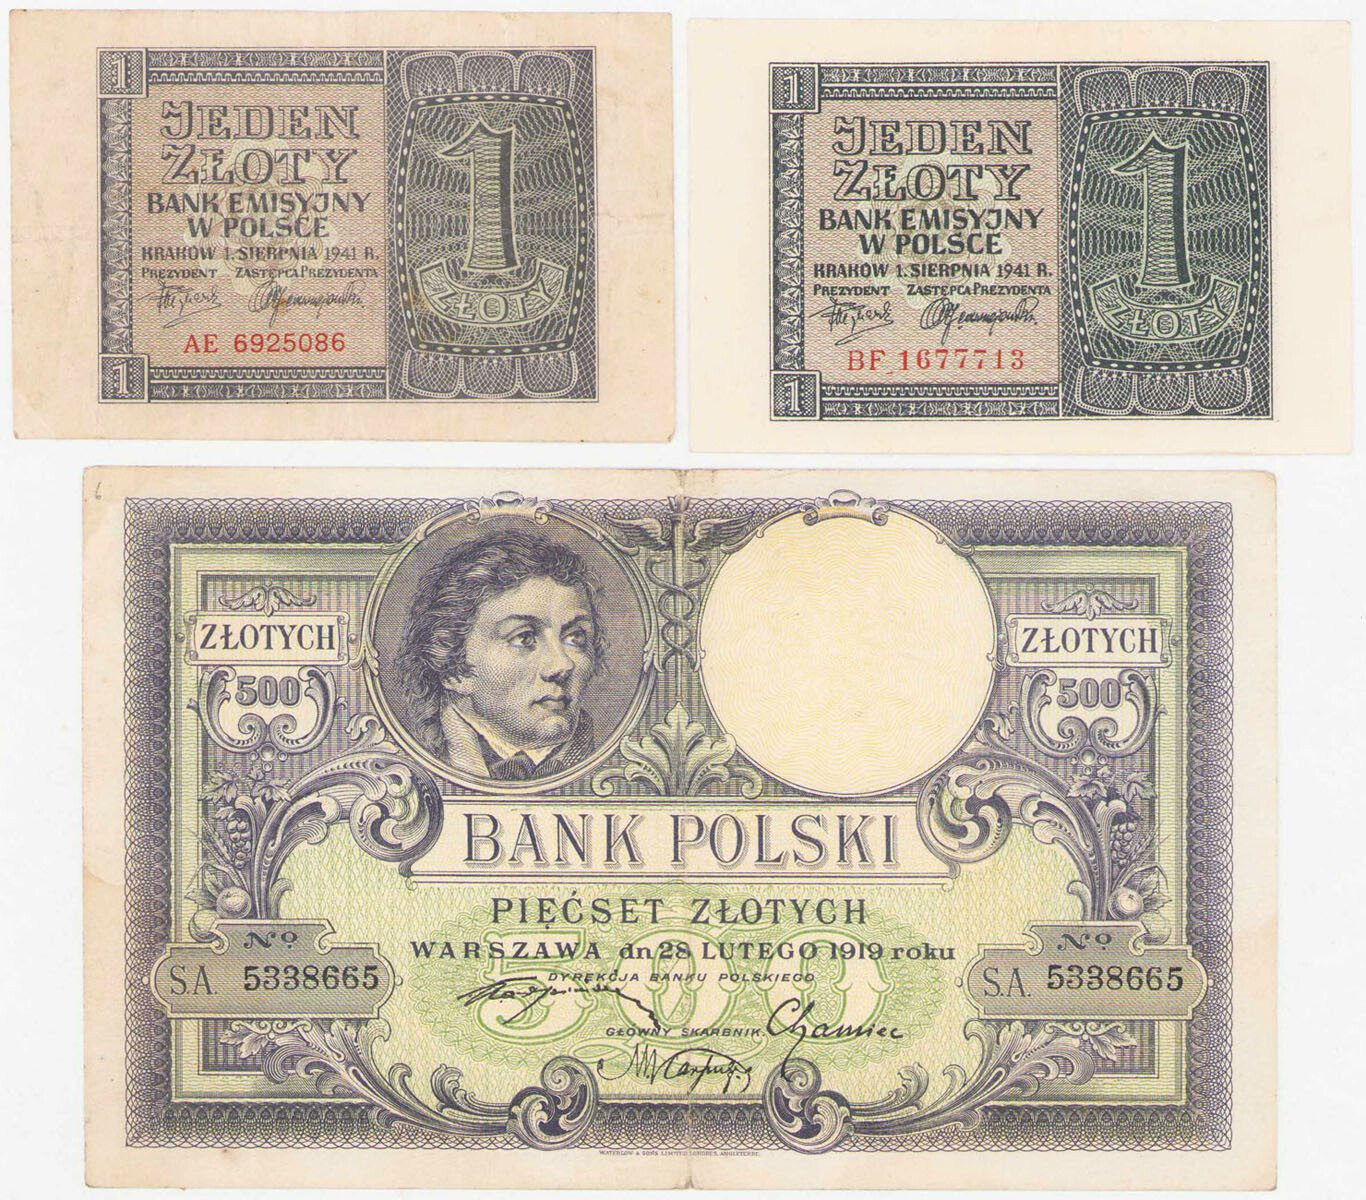 1 złoty 1941 i 500 złotych 1919, zestaw 3 banknotów